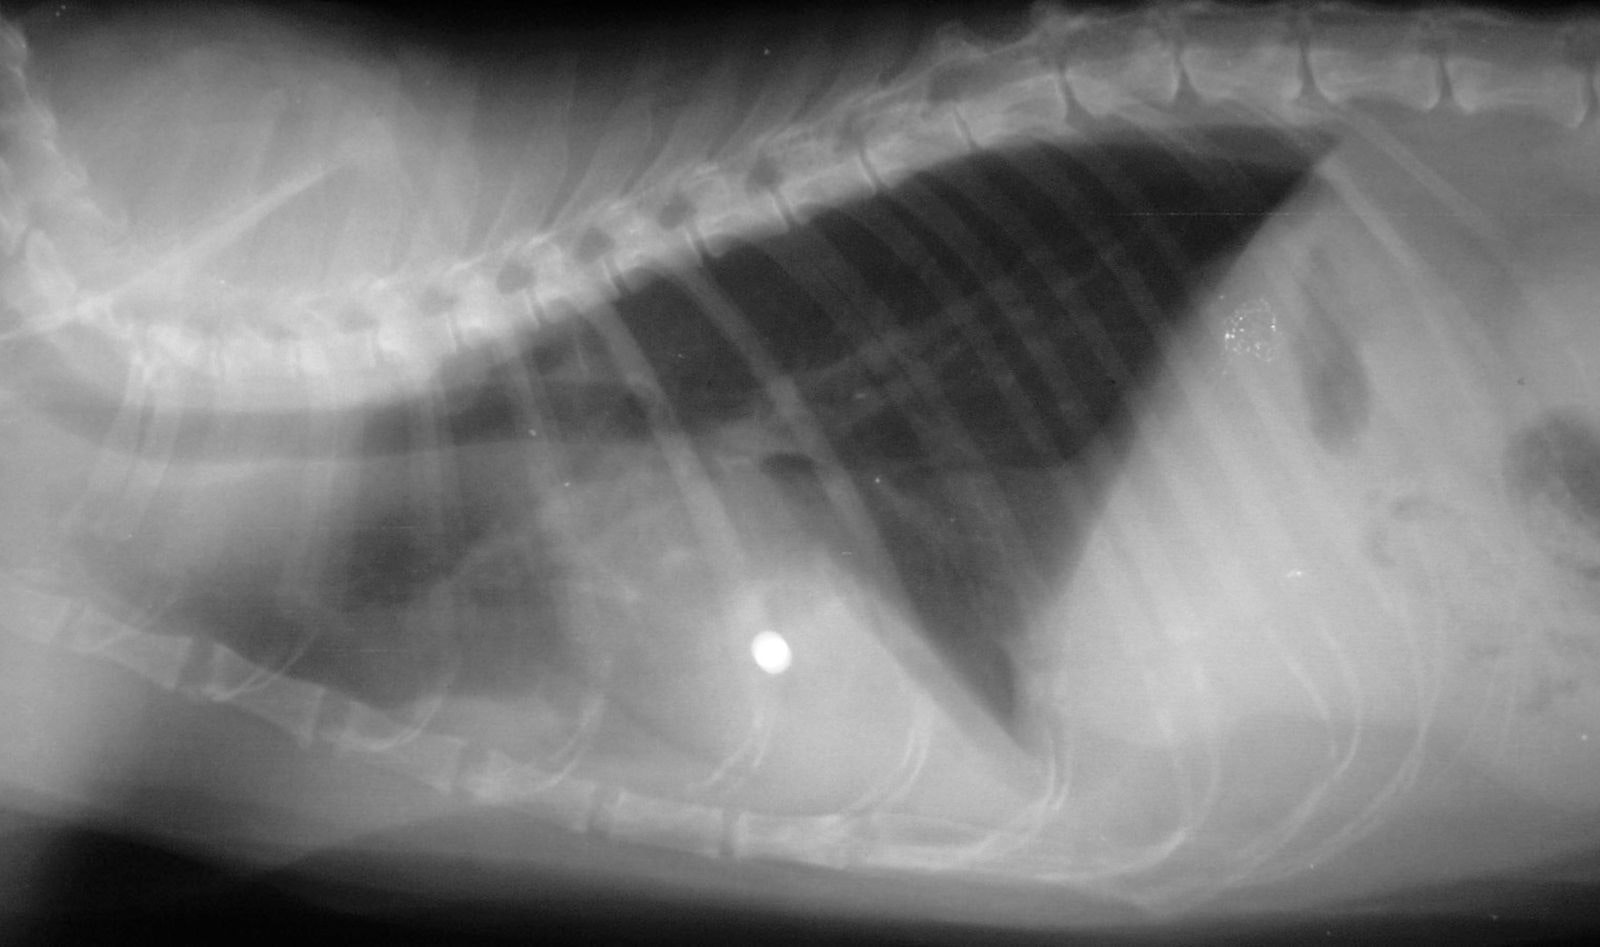 Radiographie latérale révélant la présence d’un plomb dans le myocarde d’un chat.